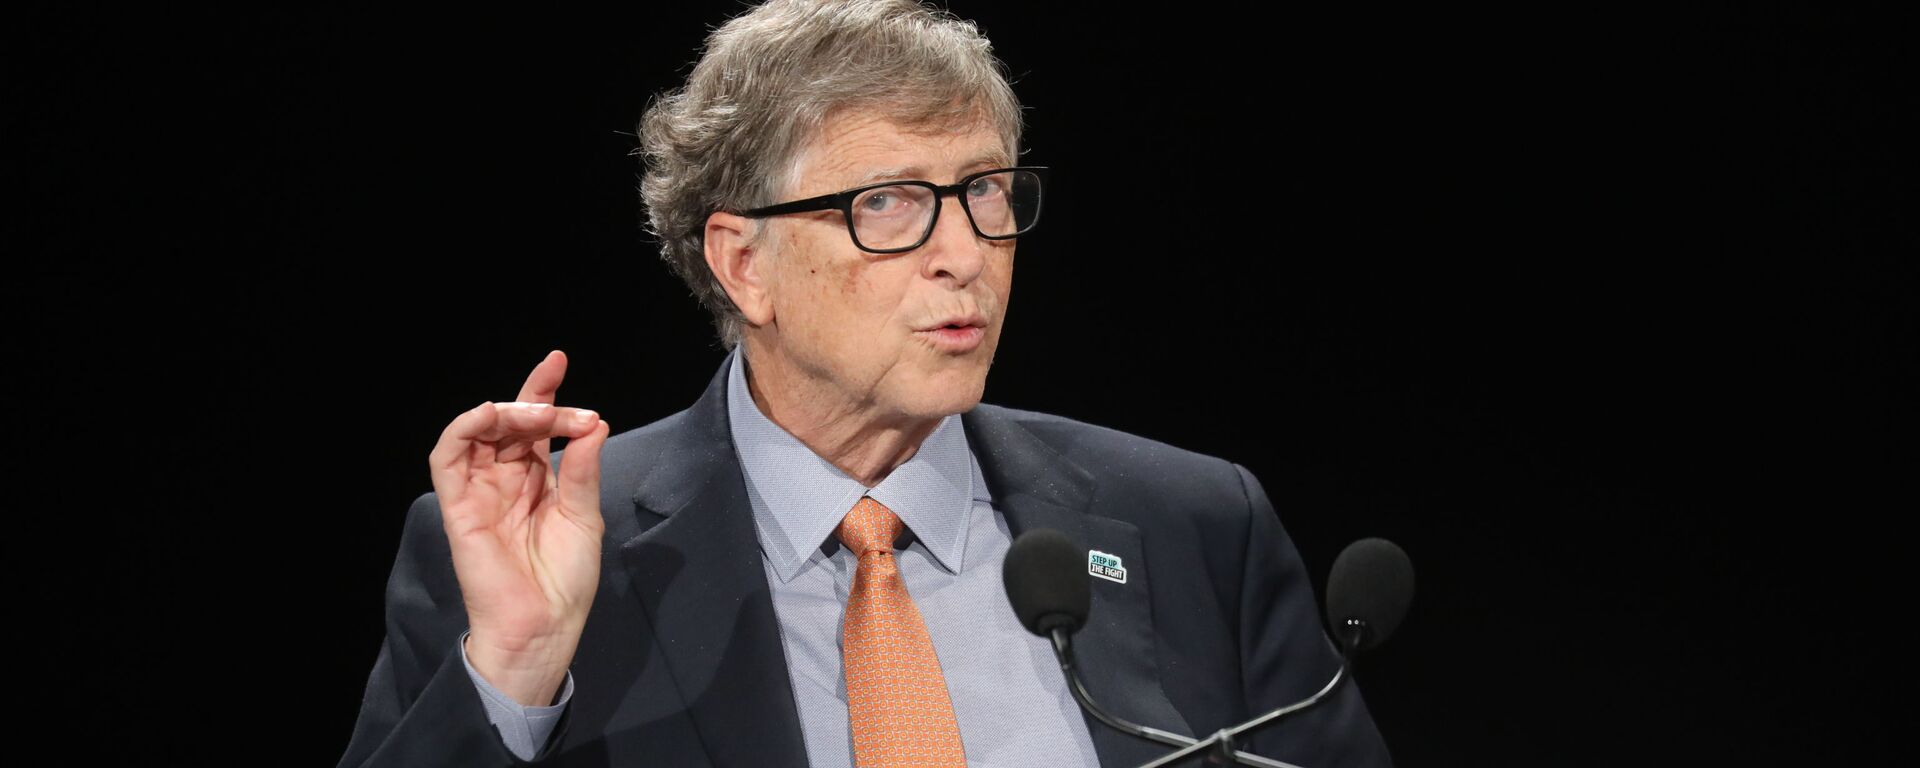 Bill Gates, fundador de Microsoft - Sputnik Mundo, 1920, 11.05.2021